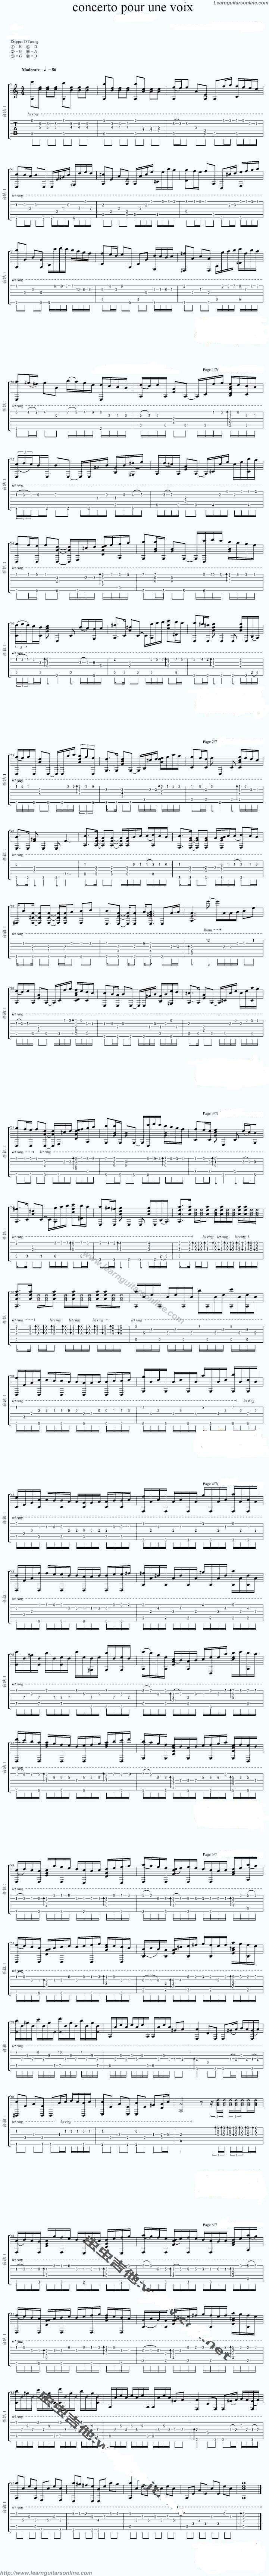 Concerto pour une voix by Saint Preux Danielle Licari Guitar Tabs Chords Solo Notes Sheet Music Free